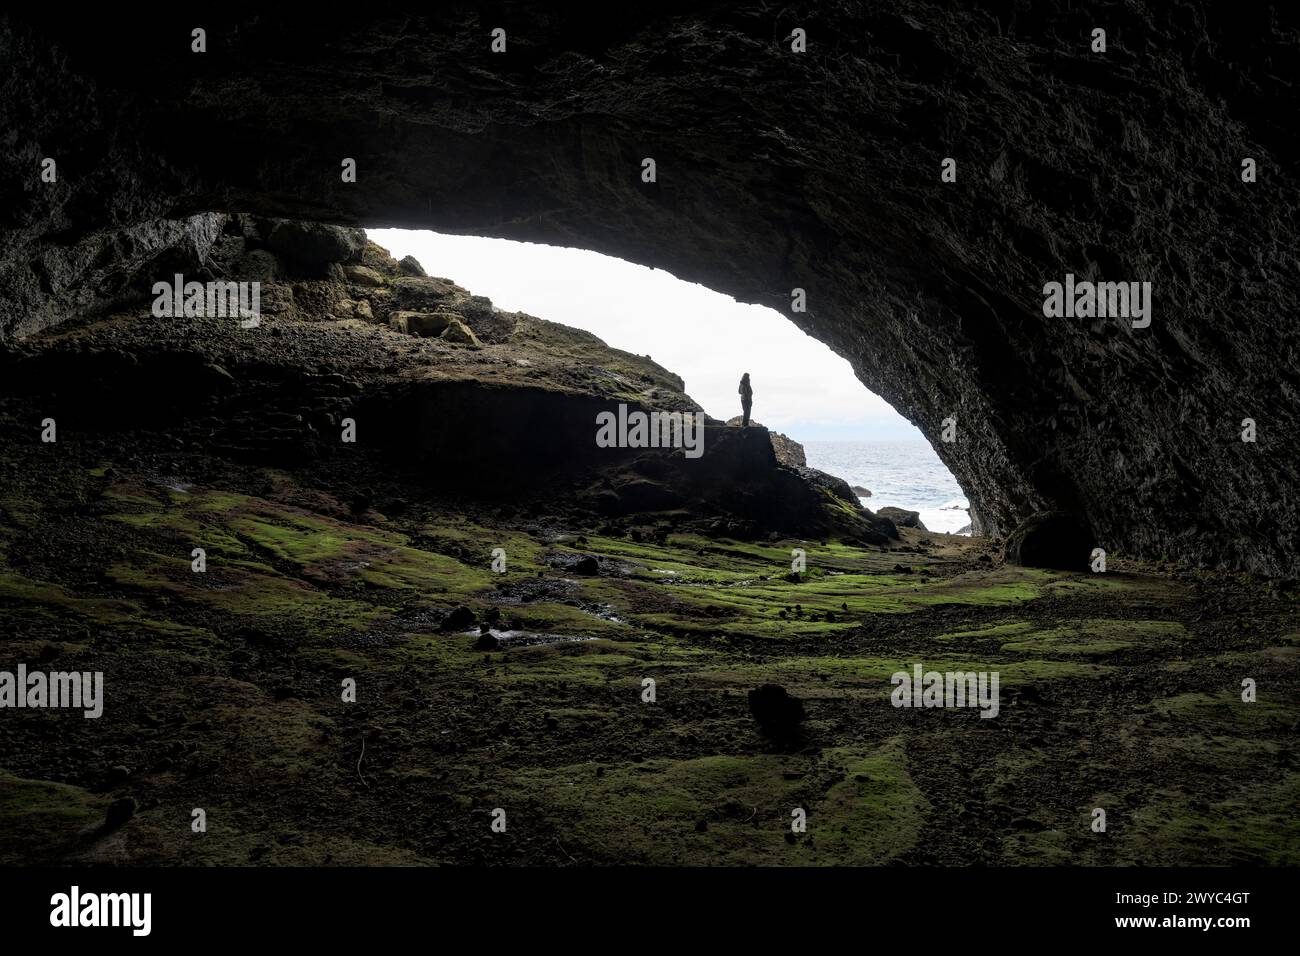 Una persona si trova alla foce di una grande grotta marina, sagomata contro il cielo luminoso e la costa frastagliata Foto Stock